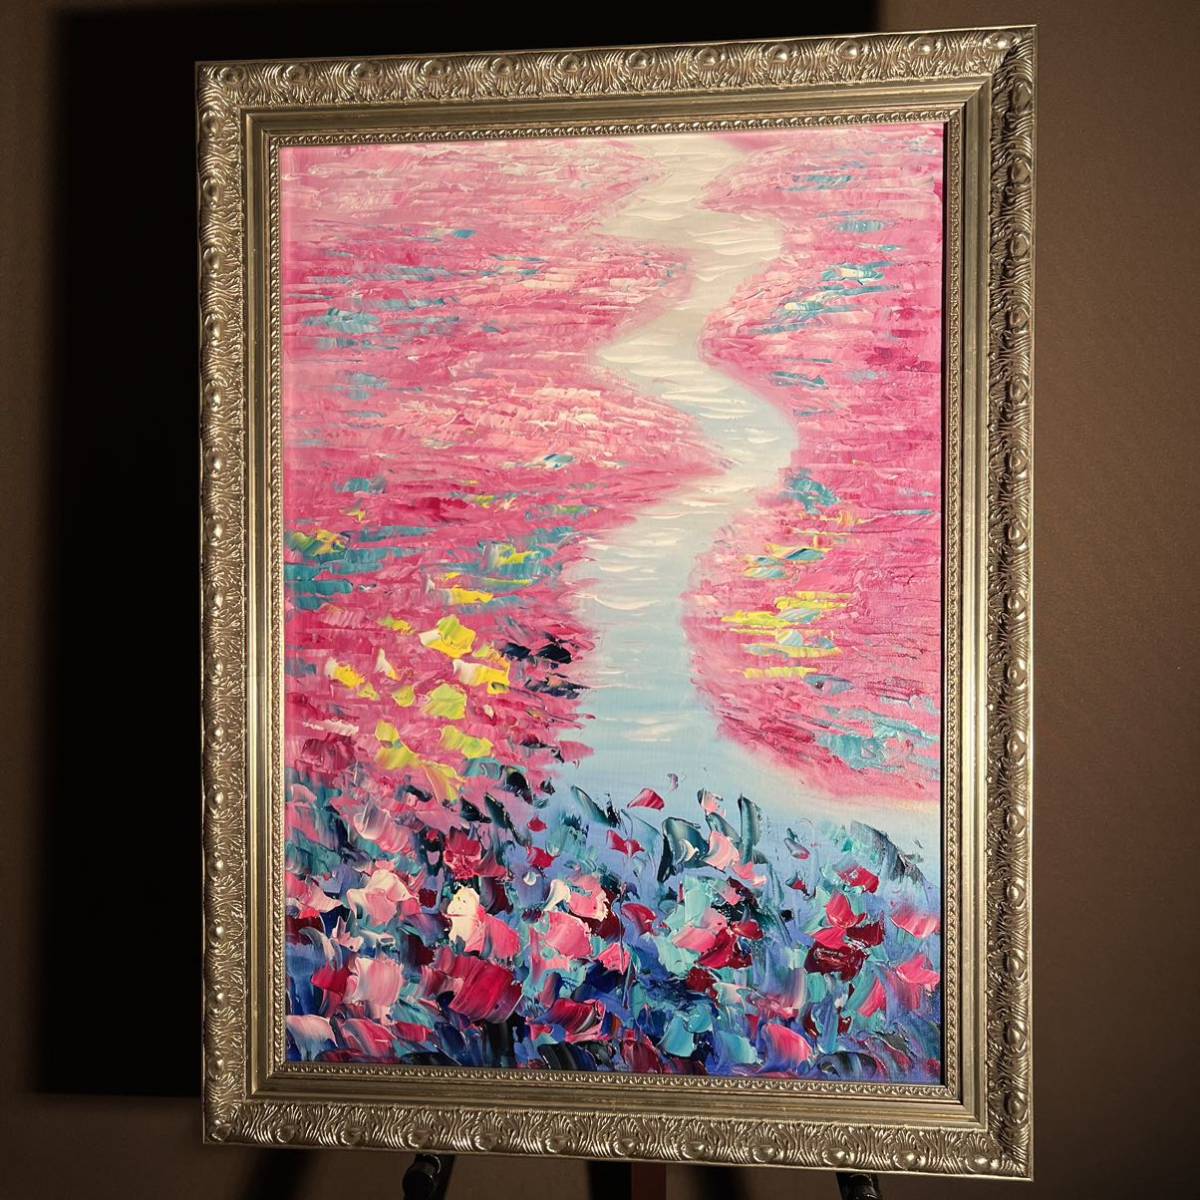 手書き油絵 色づく睡蓮の池 絵画 額付き インテリア 油彩画, 絵画, 油彩, 自然, 風景画